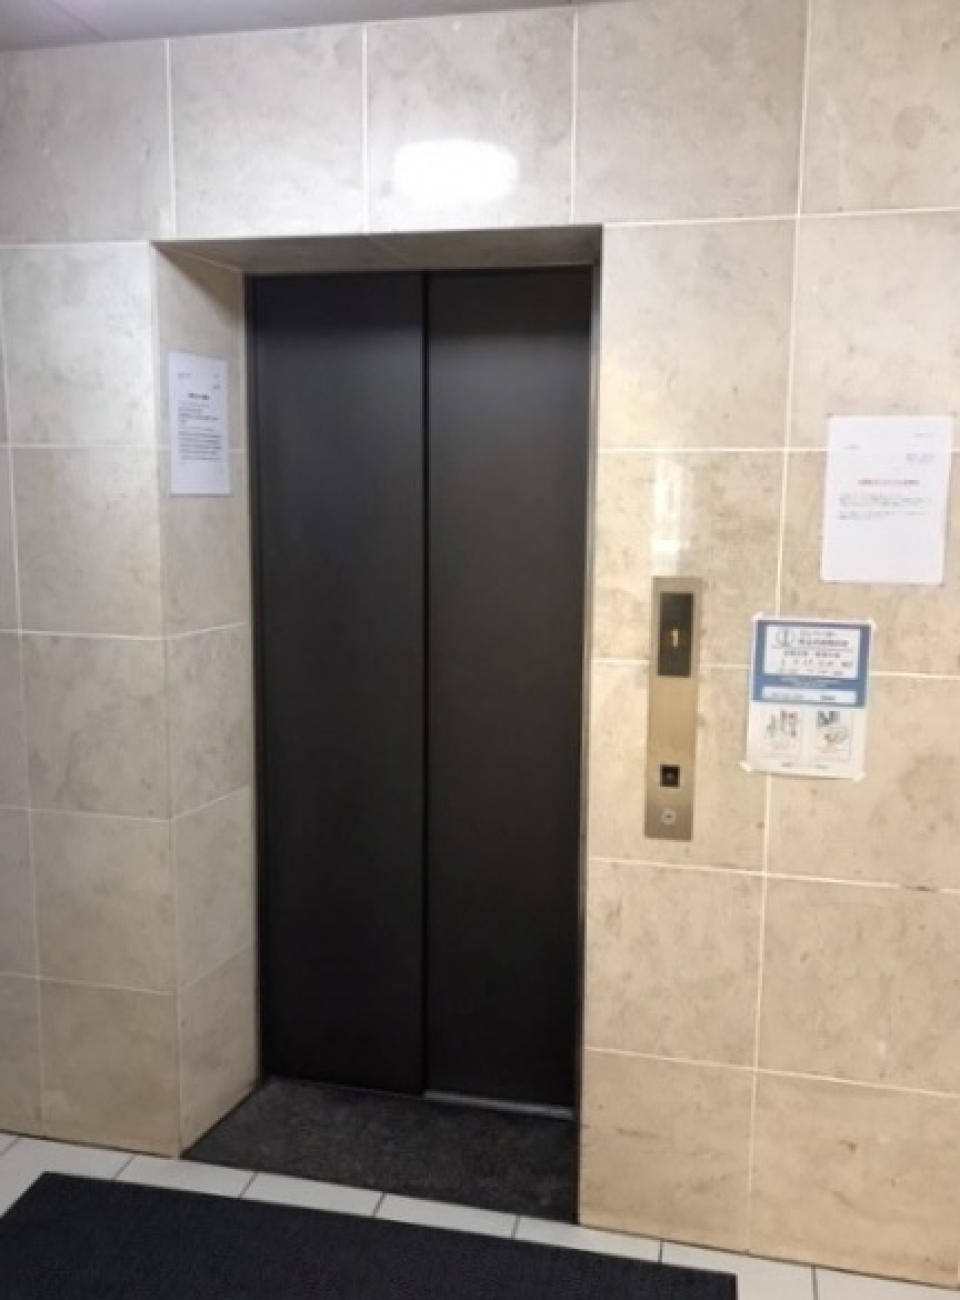 エレベーターあり。　※画像はイメージです。